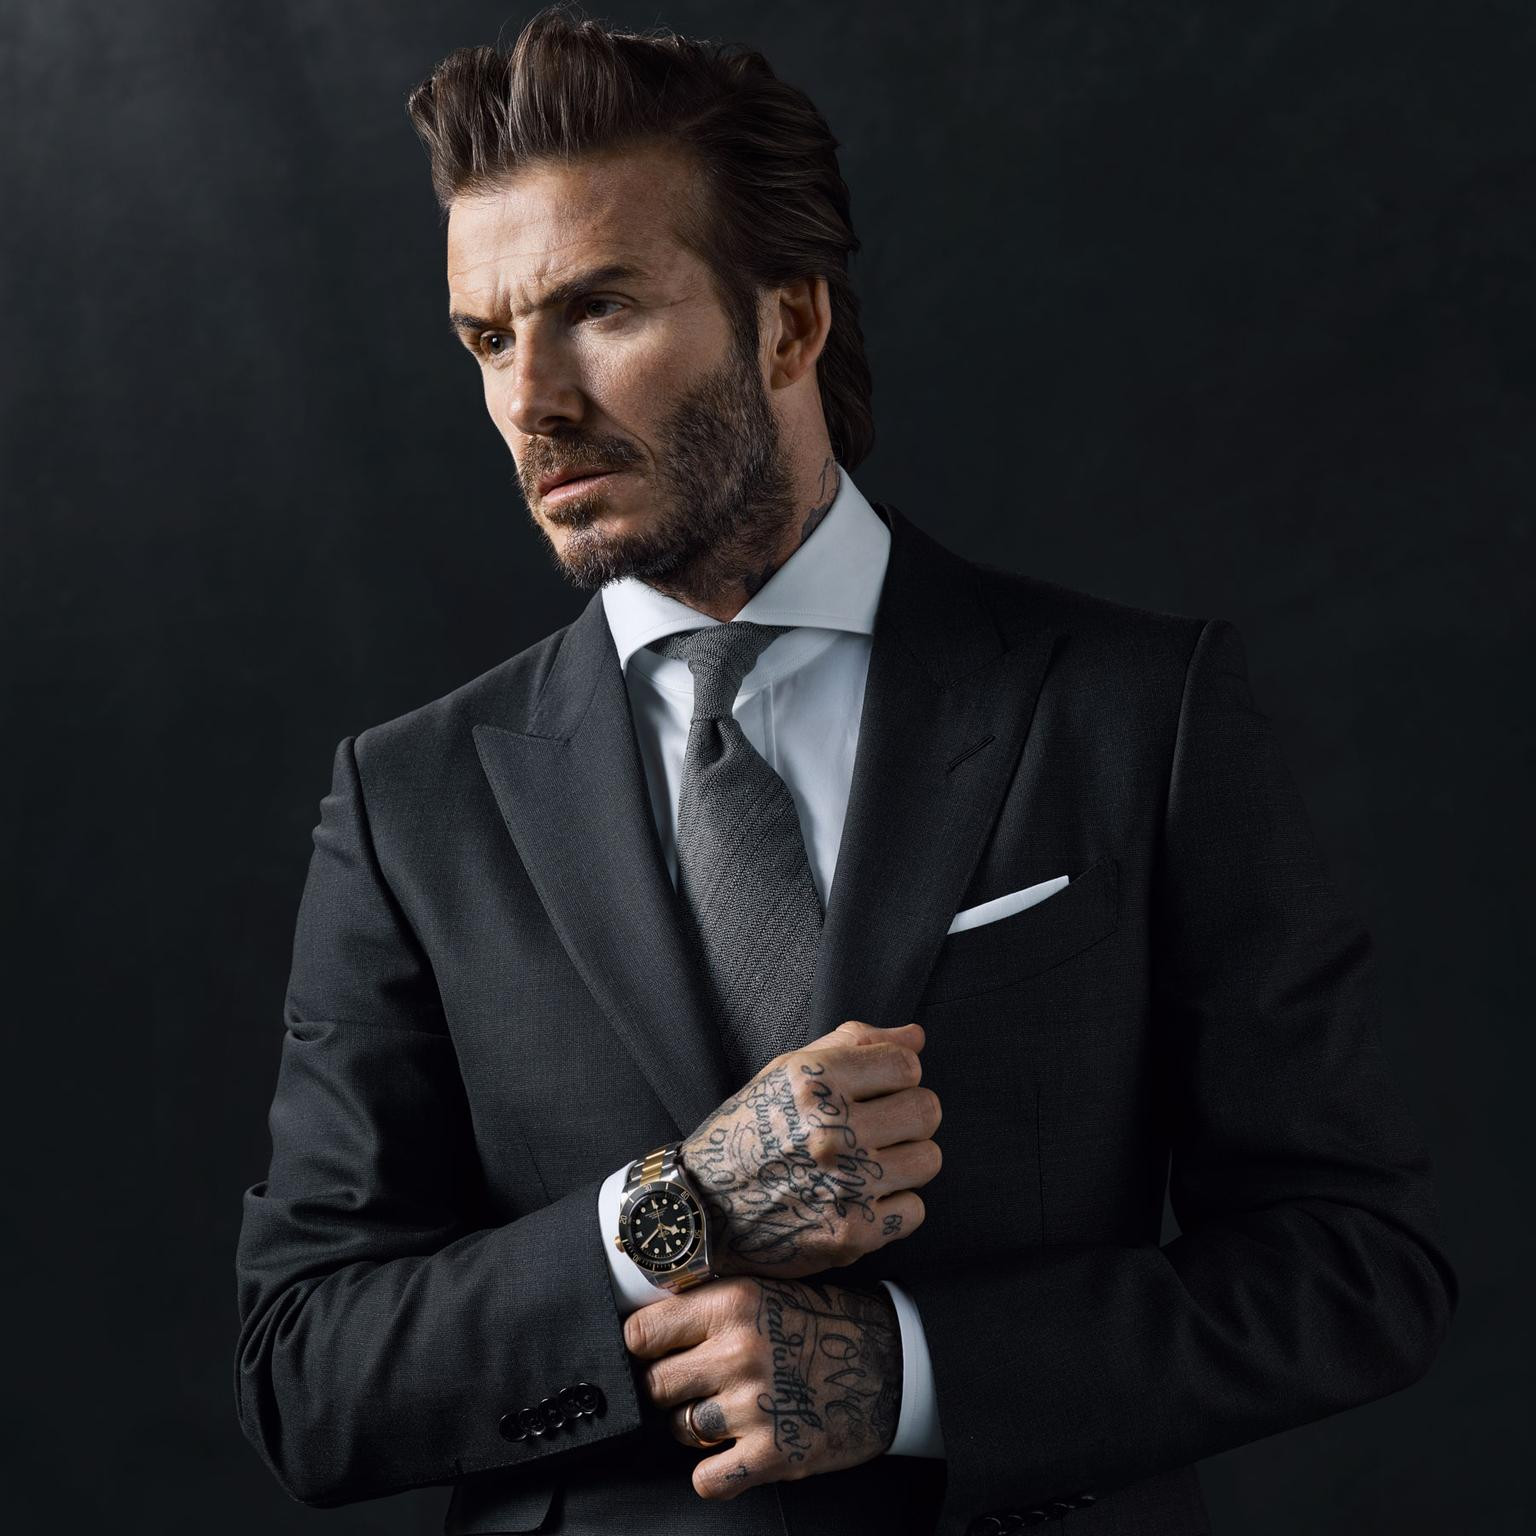 Vẻ ngoài nam tính của Beckham trong ảnh quảng cáo đồng hồ của Tudor